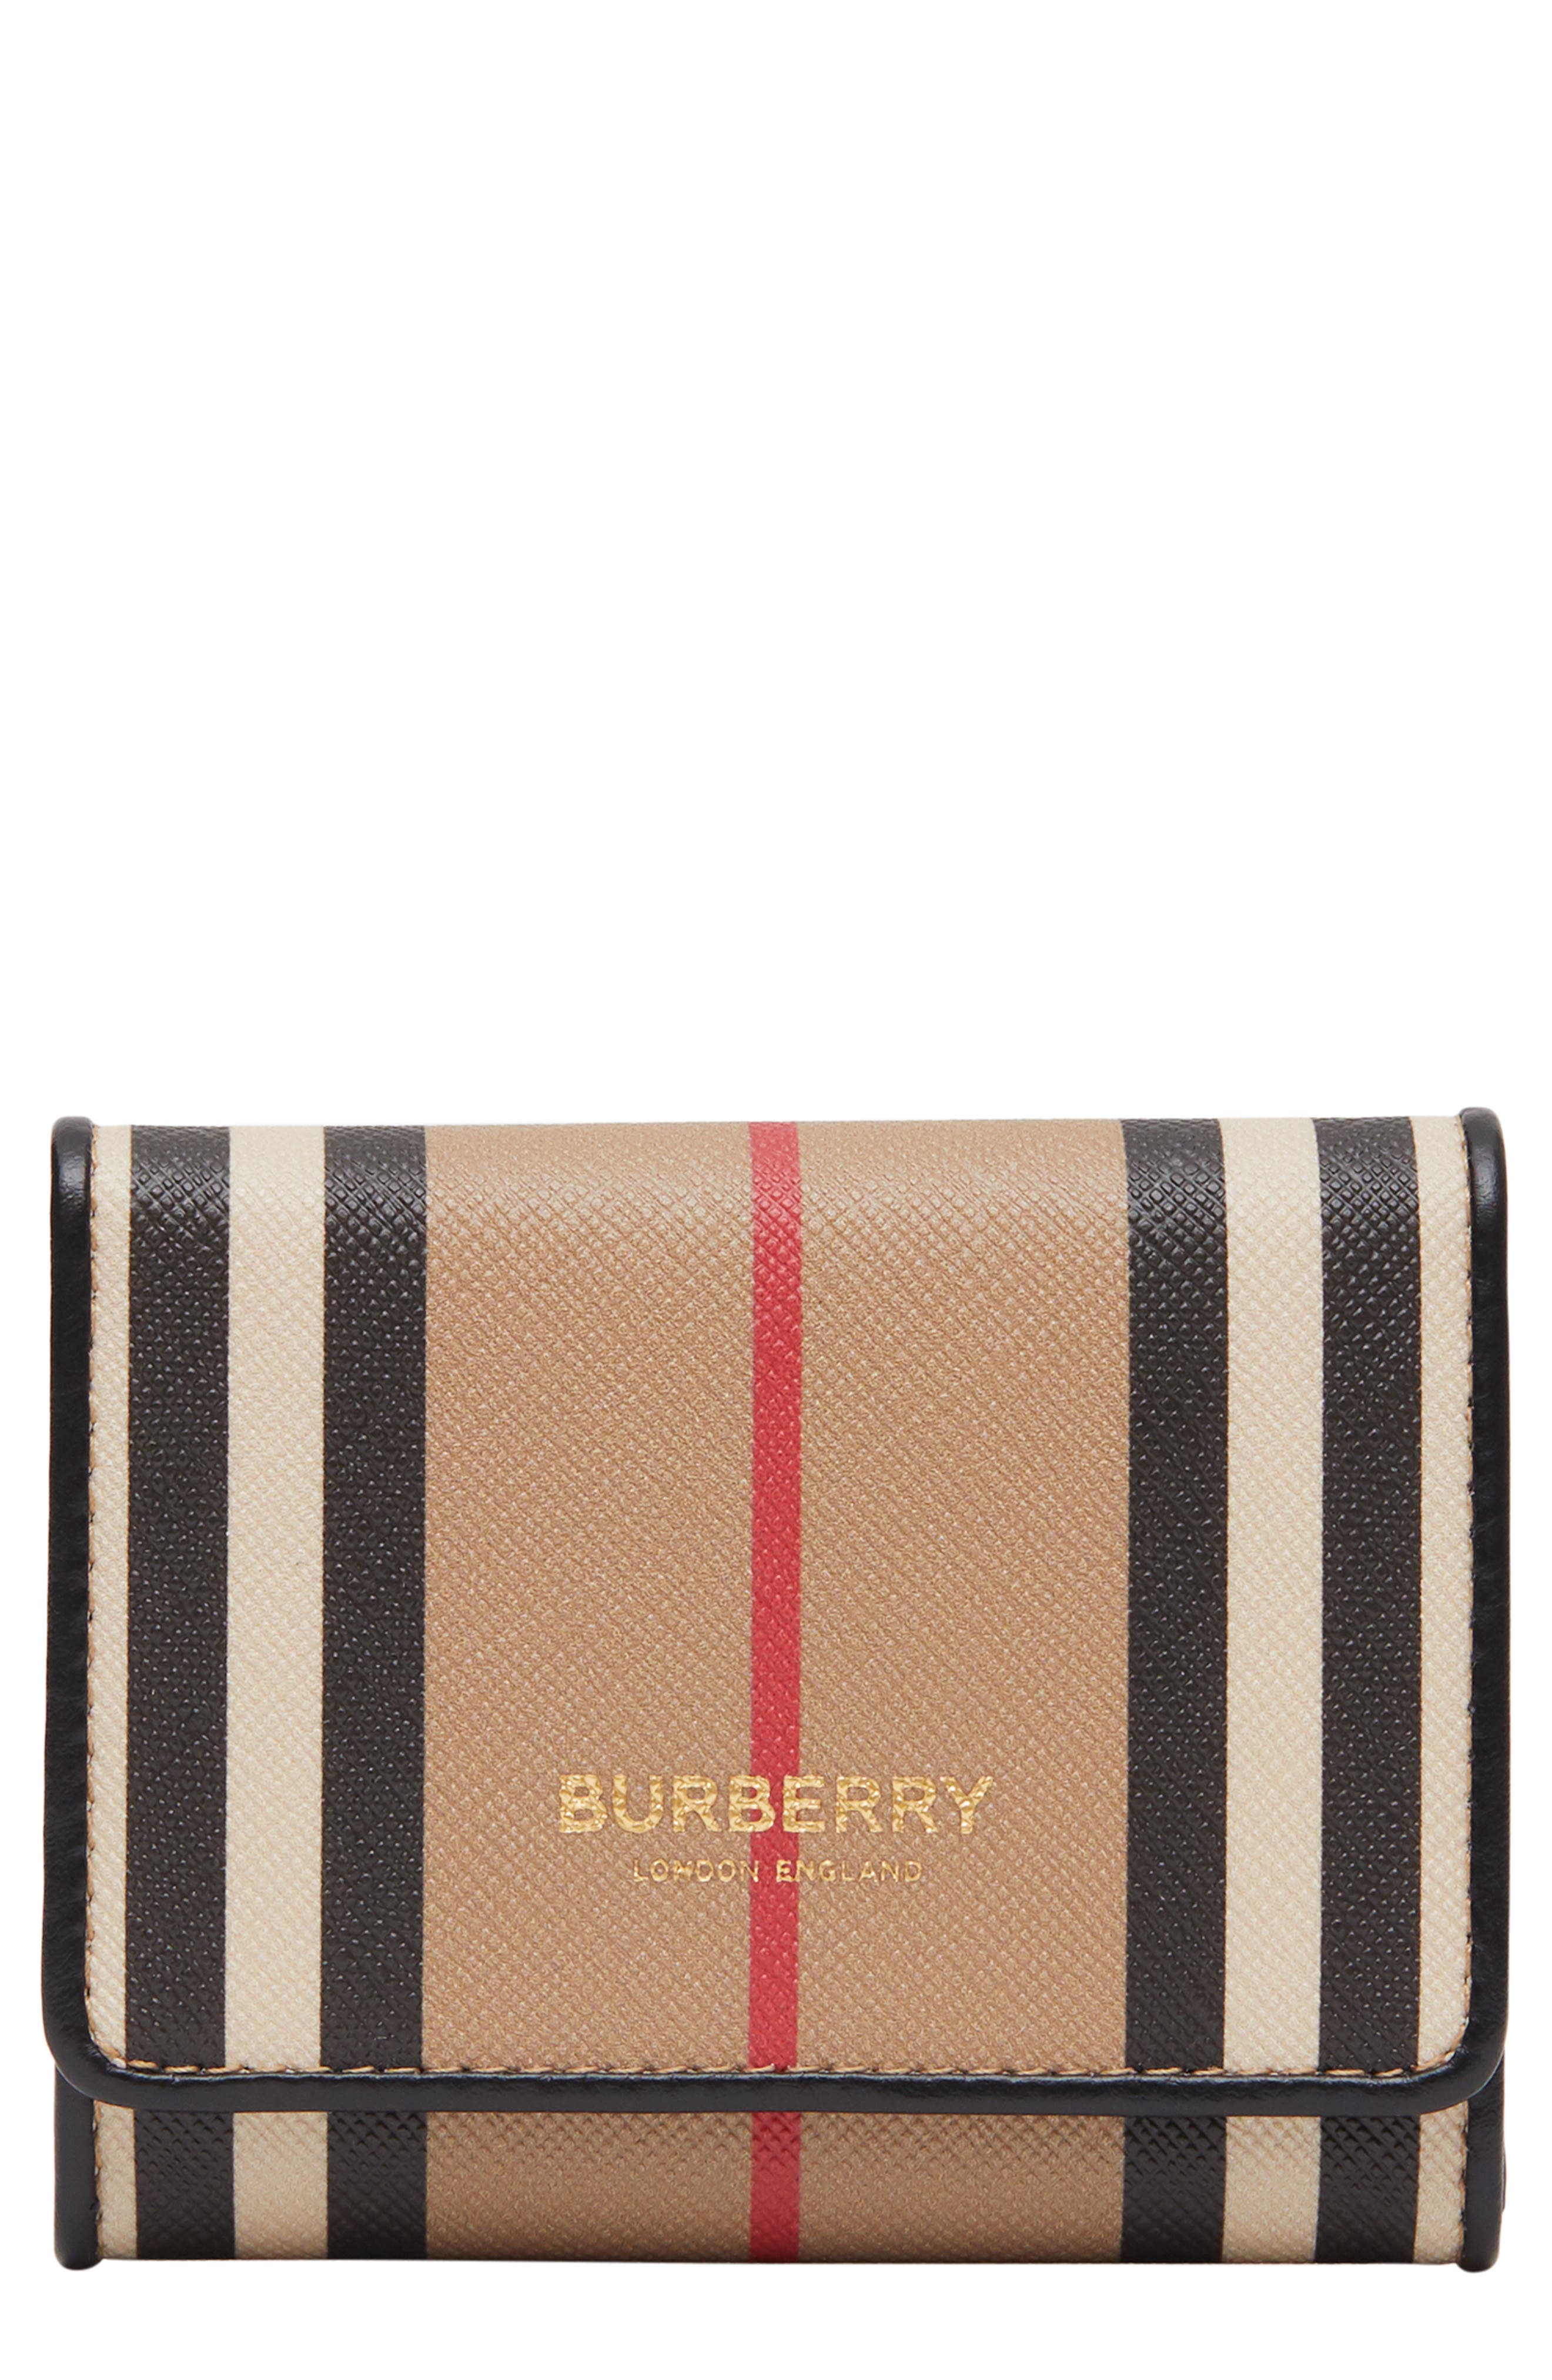 burberry wallet nordstrom